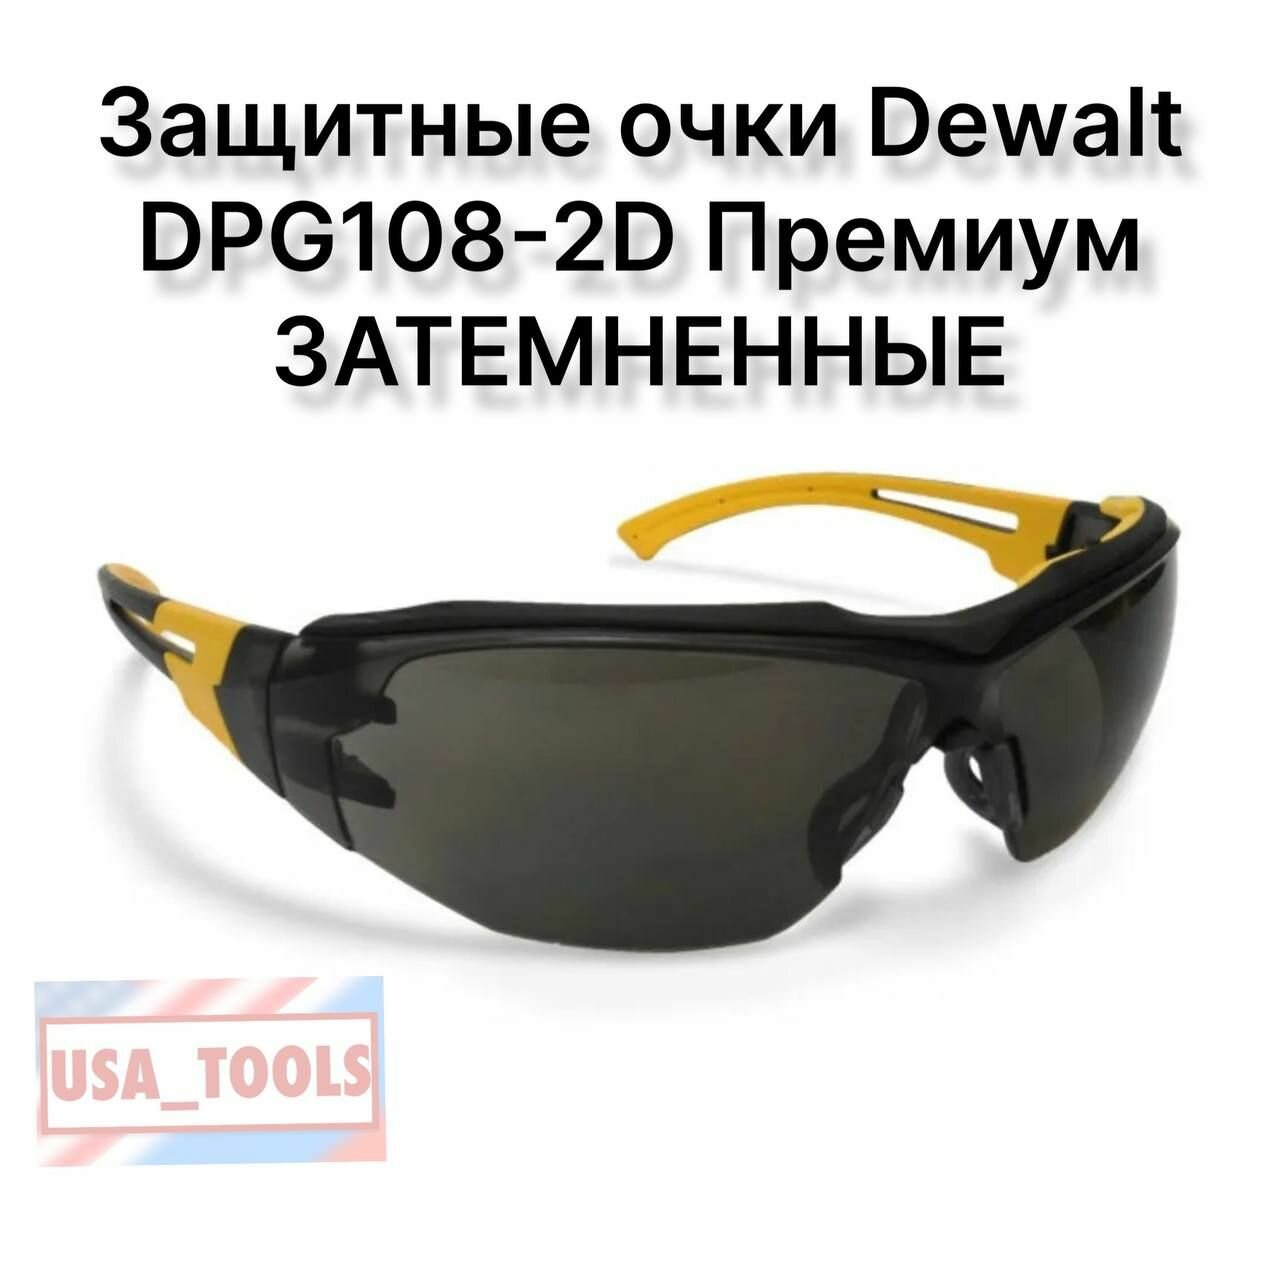 Защитные очки Dewalt DPG108-2D Премиум затемненные